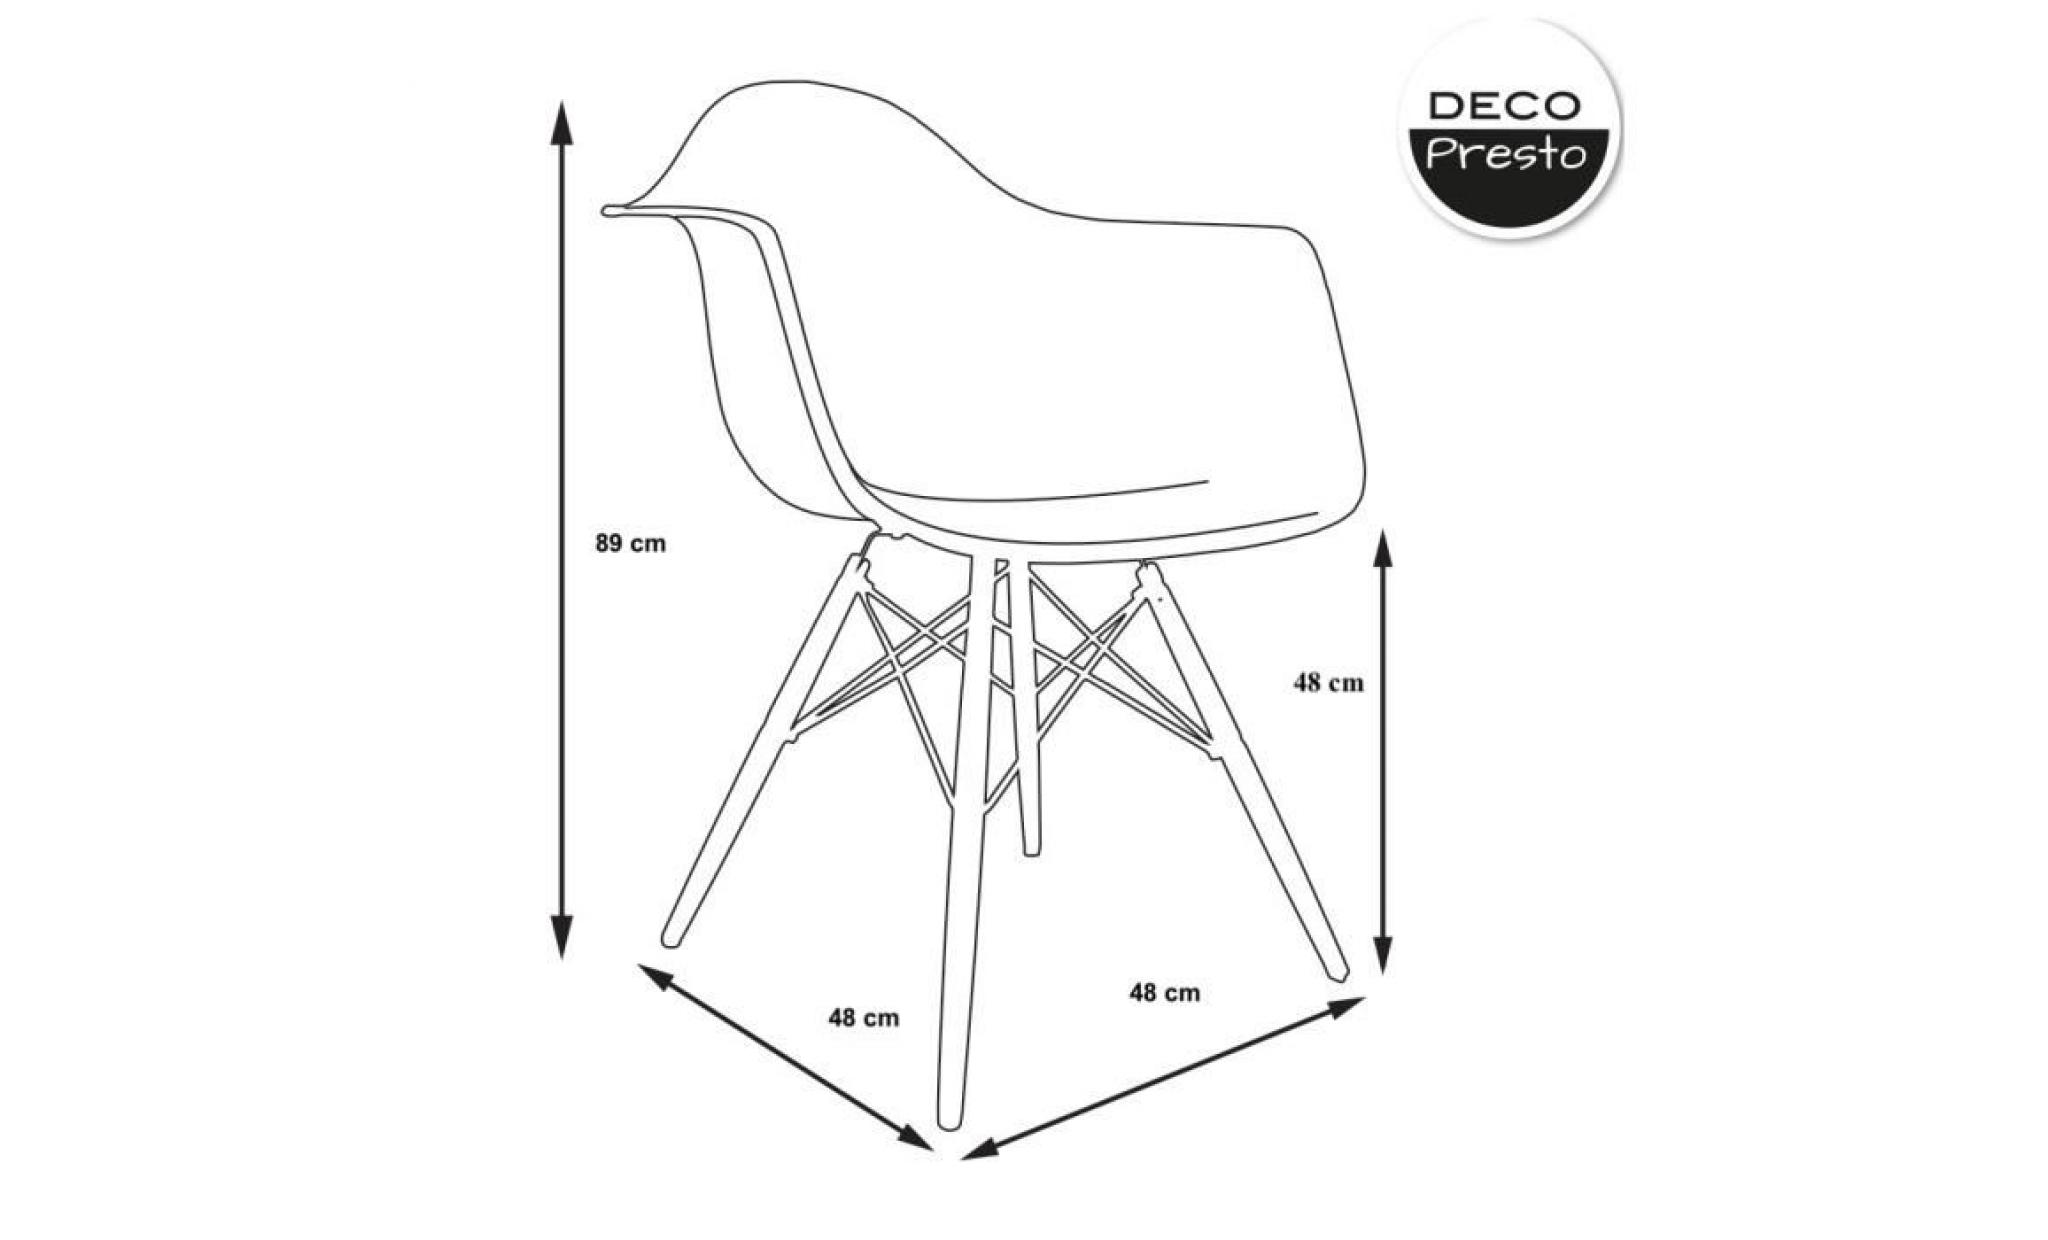 1 x fauteuil design  scandinave haut. 48 cm violet pieds: bois vernis noyer decopresto dp dawd48 pu 1 pas cher